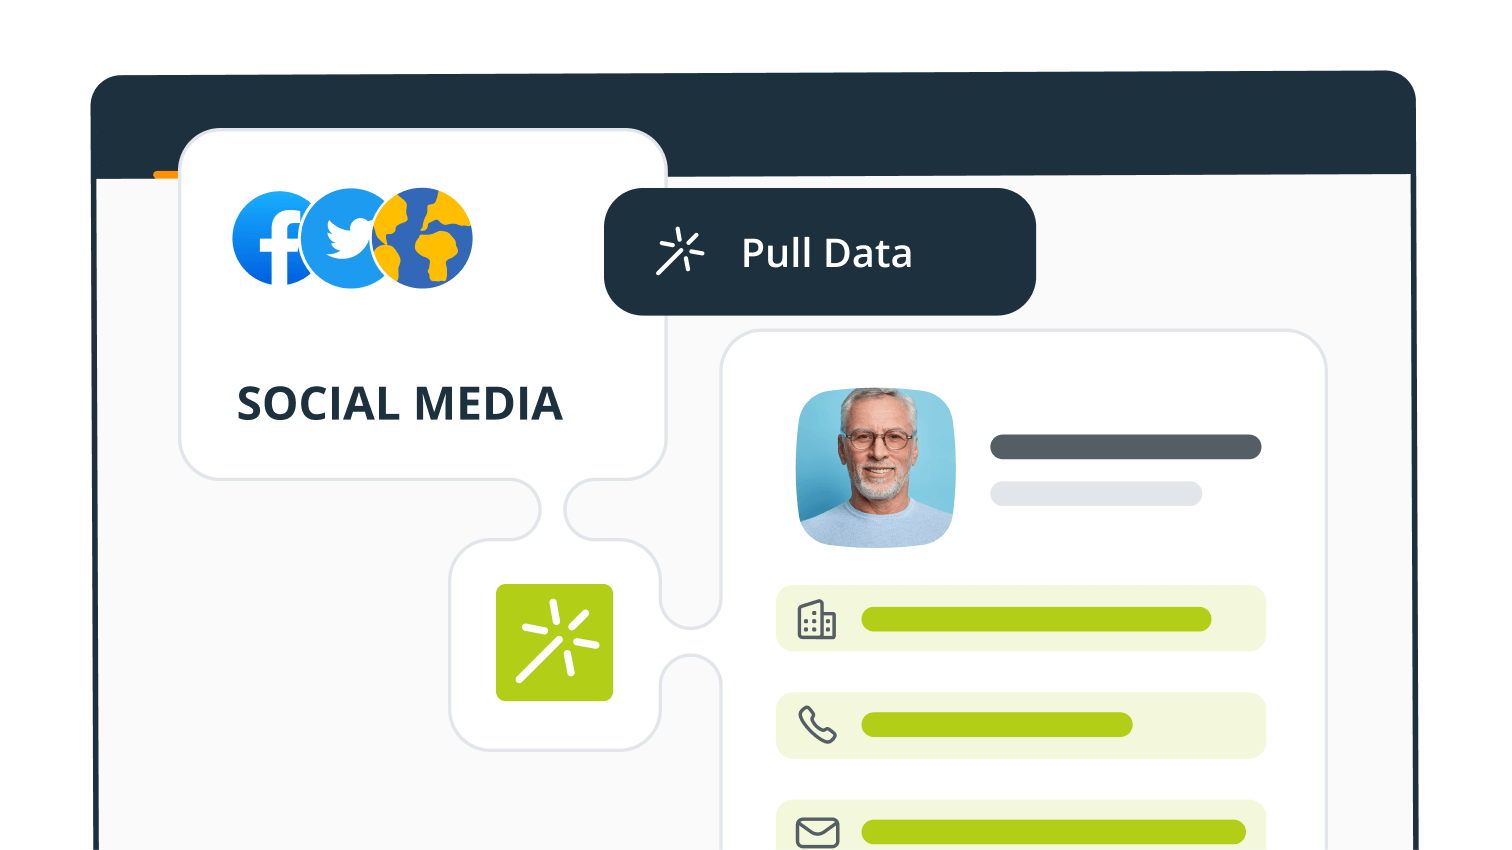 Pull up social media data